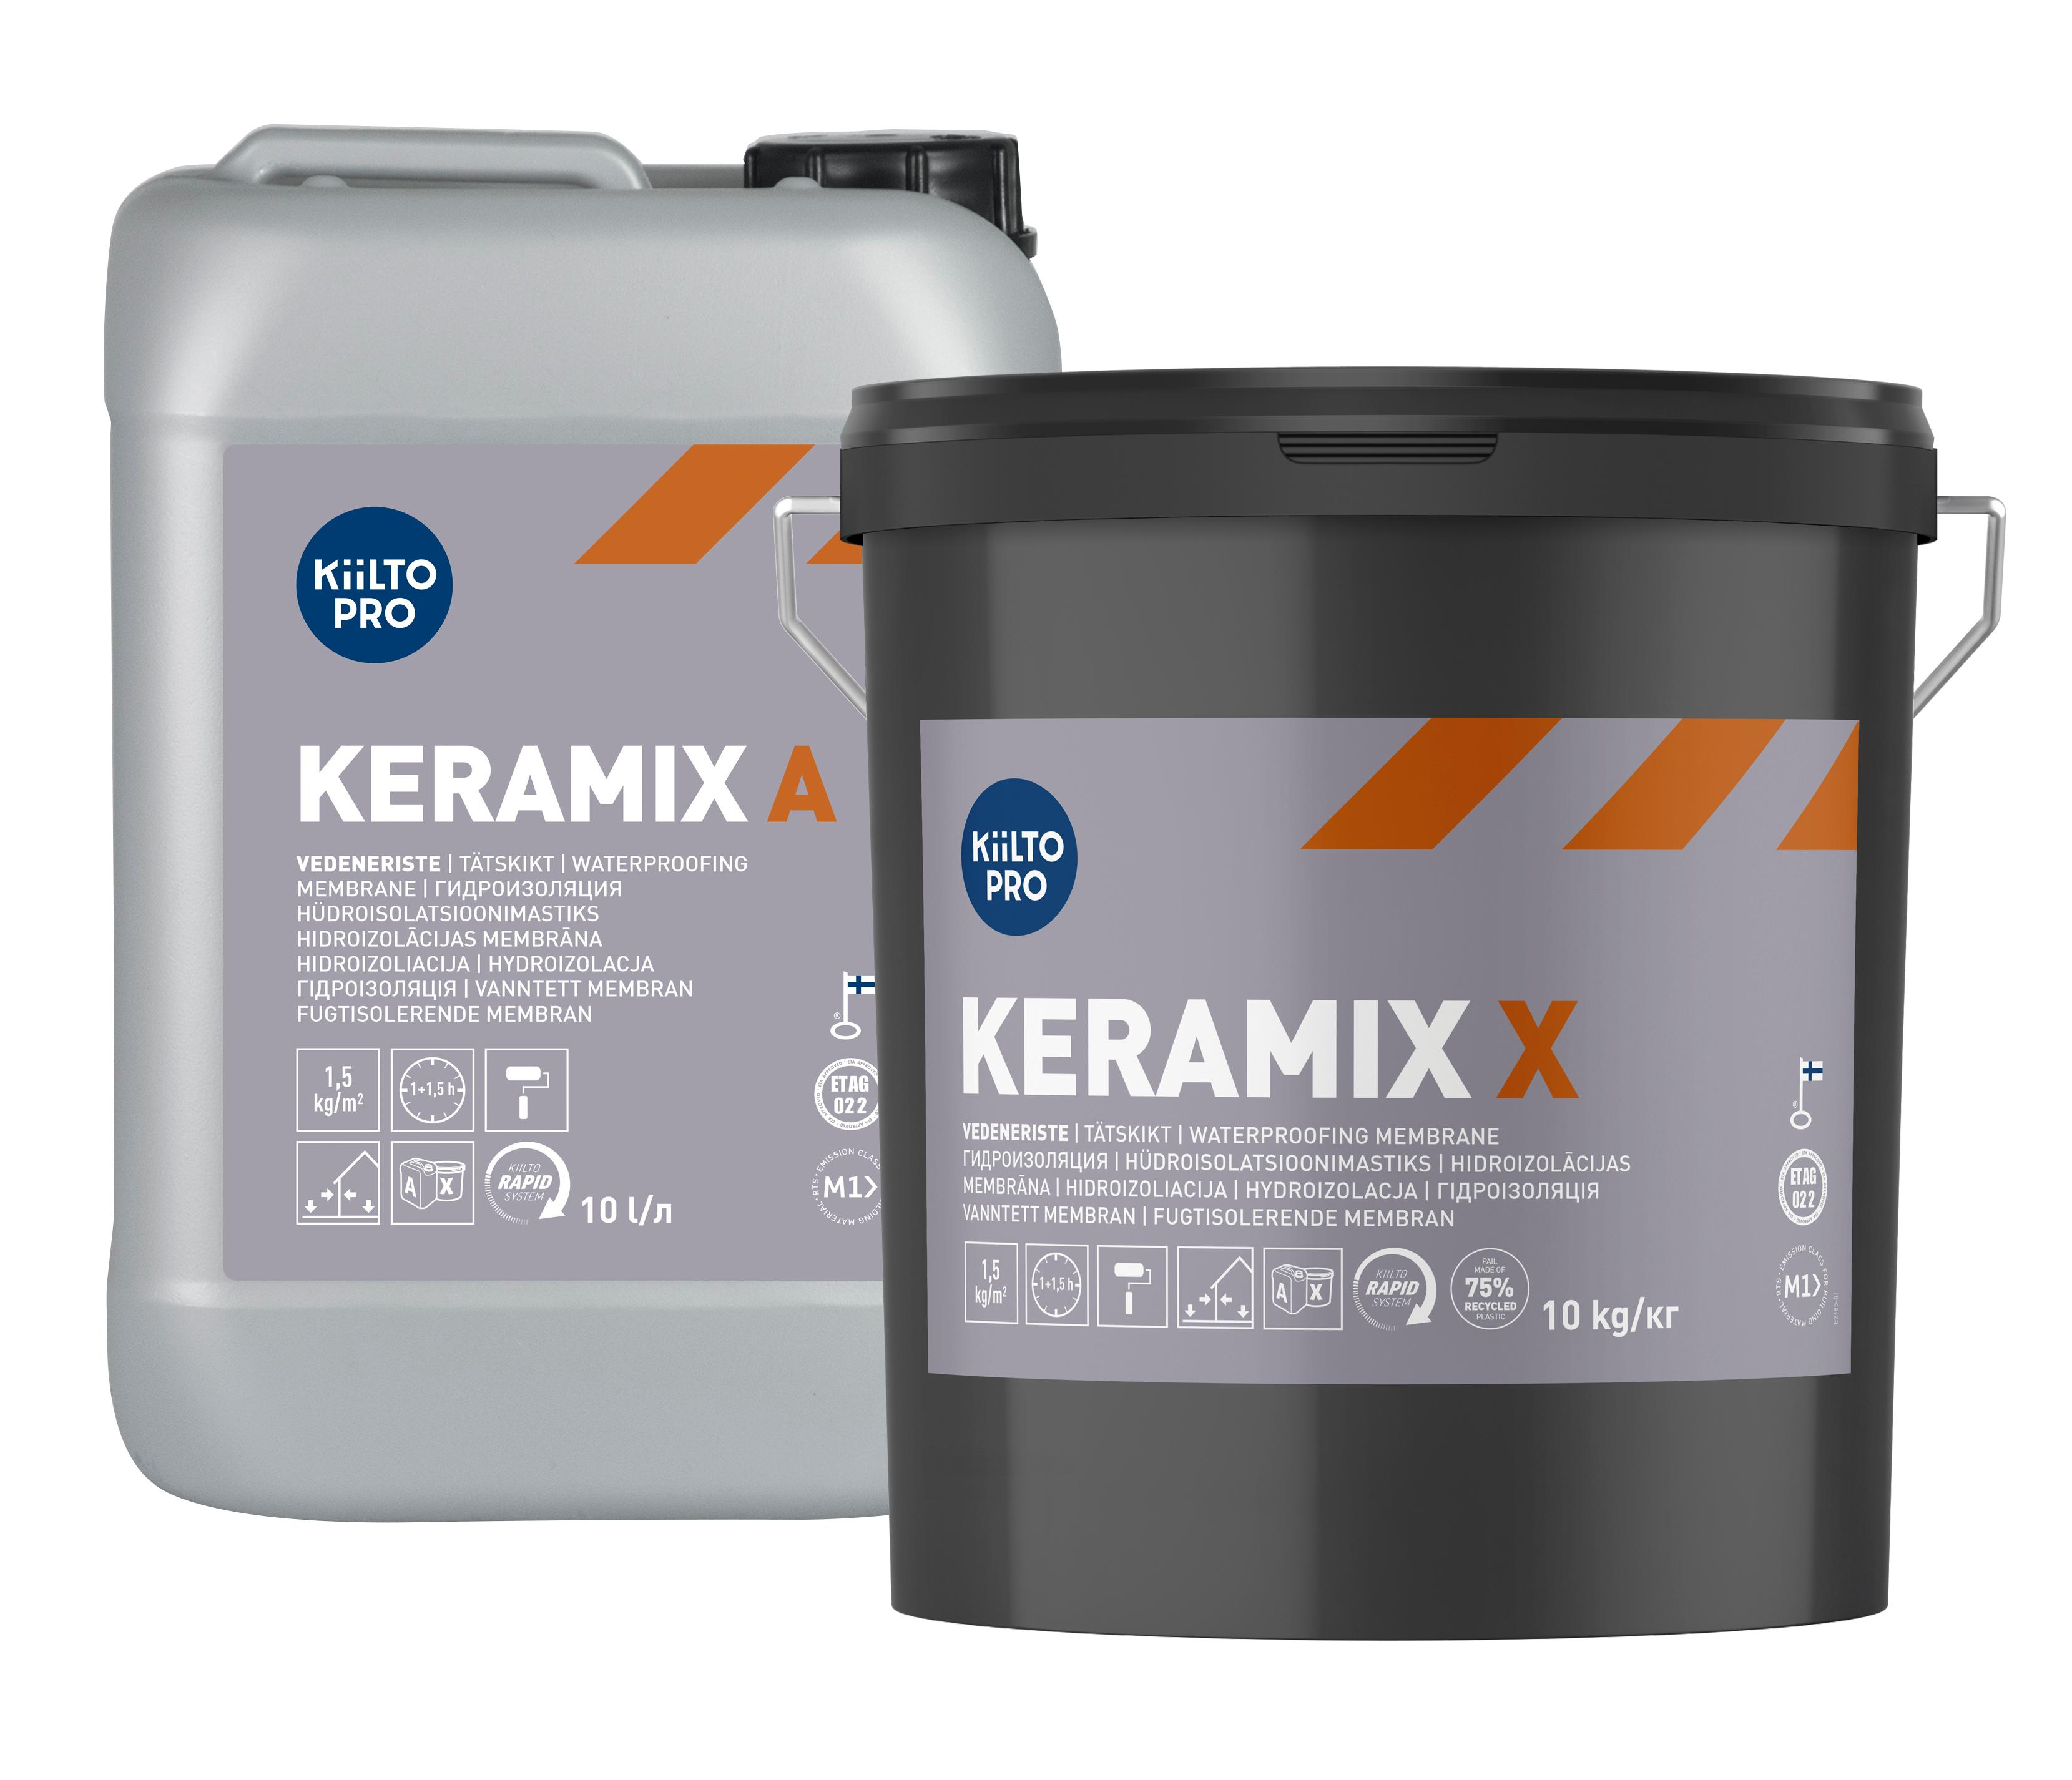 Kiilto Keramix A + X vesieristettä on saatavilla kahdessa 10 kg:n astiassa, jolloin komponentit ovat eri purkissa. Vaihtoehtona on myös 5 kg:n astia, jossa mukana molemmat komponentit.